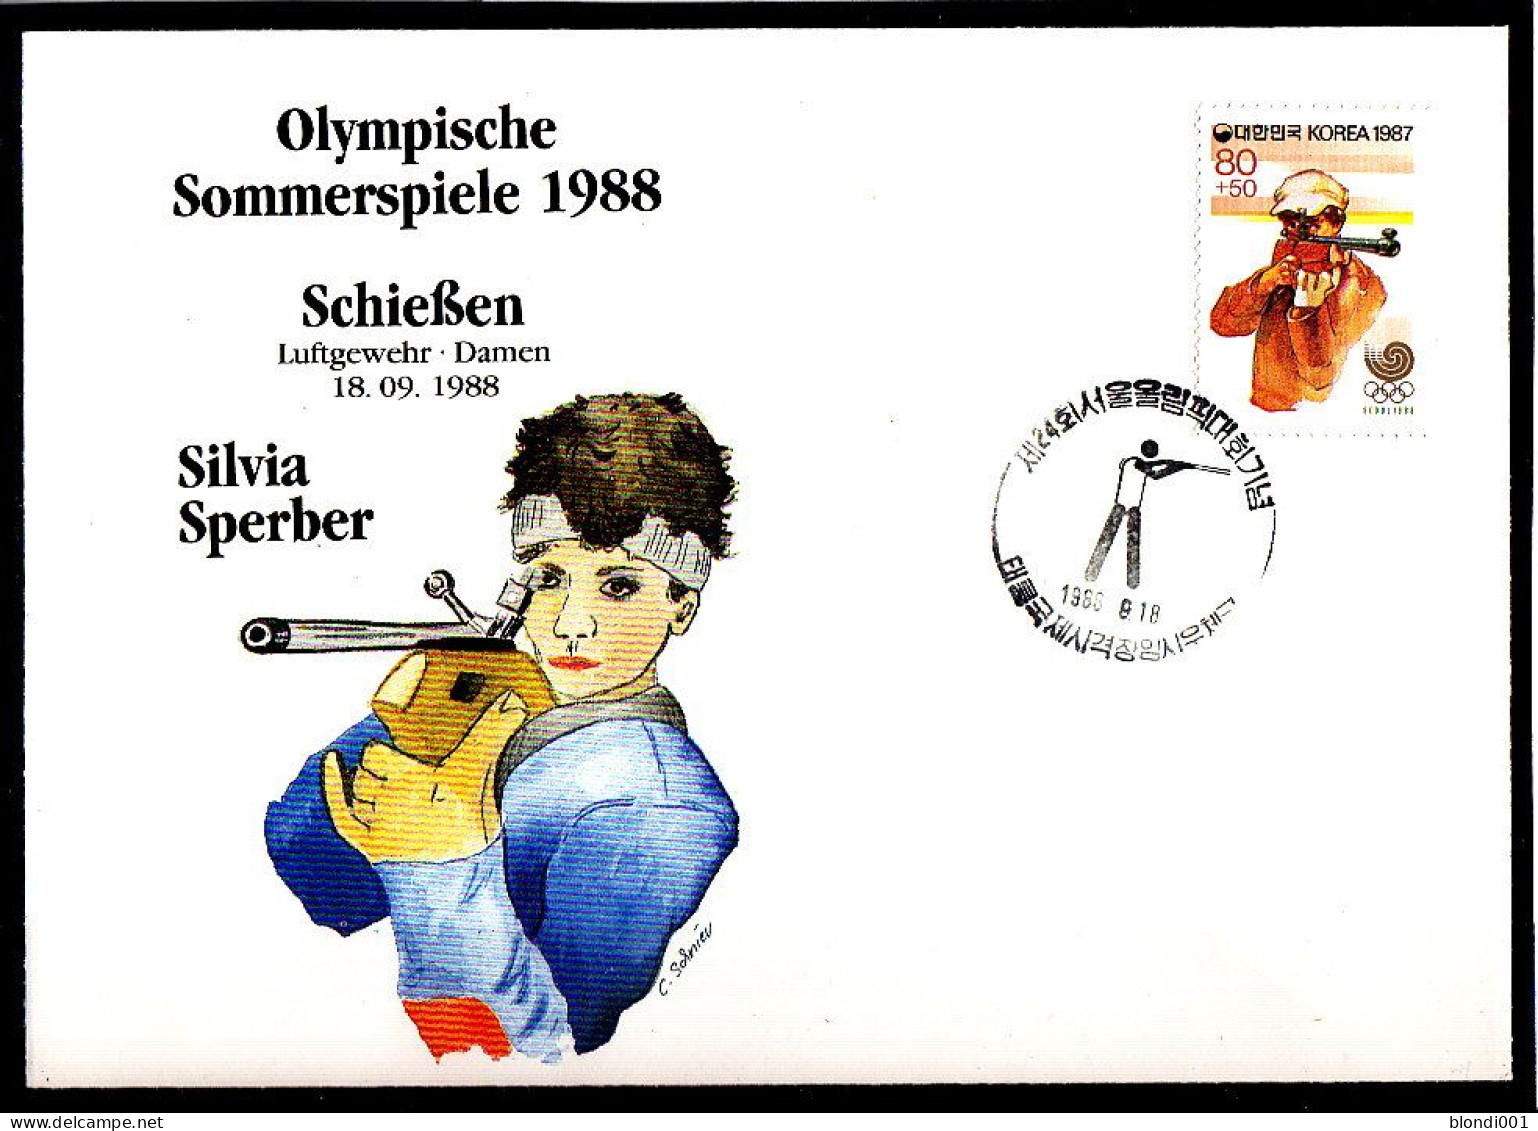 Olympics 1988 - Shooting - Sperber - SOUTH KOREA - FDC Cover - Estate 1988: Seul